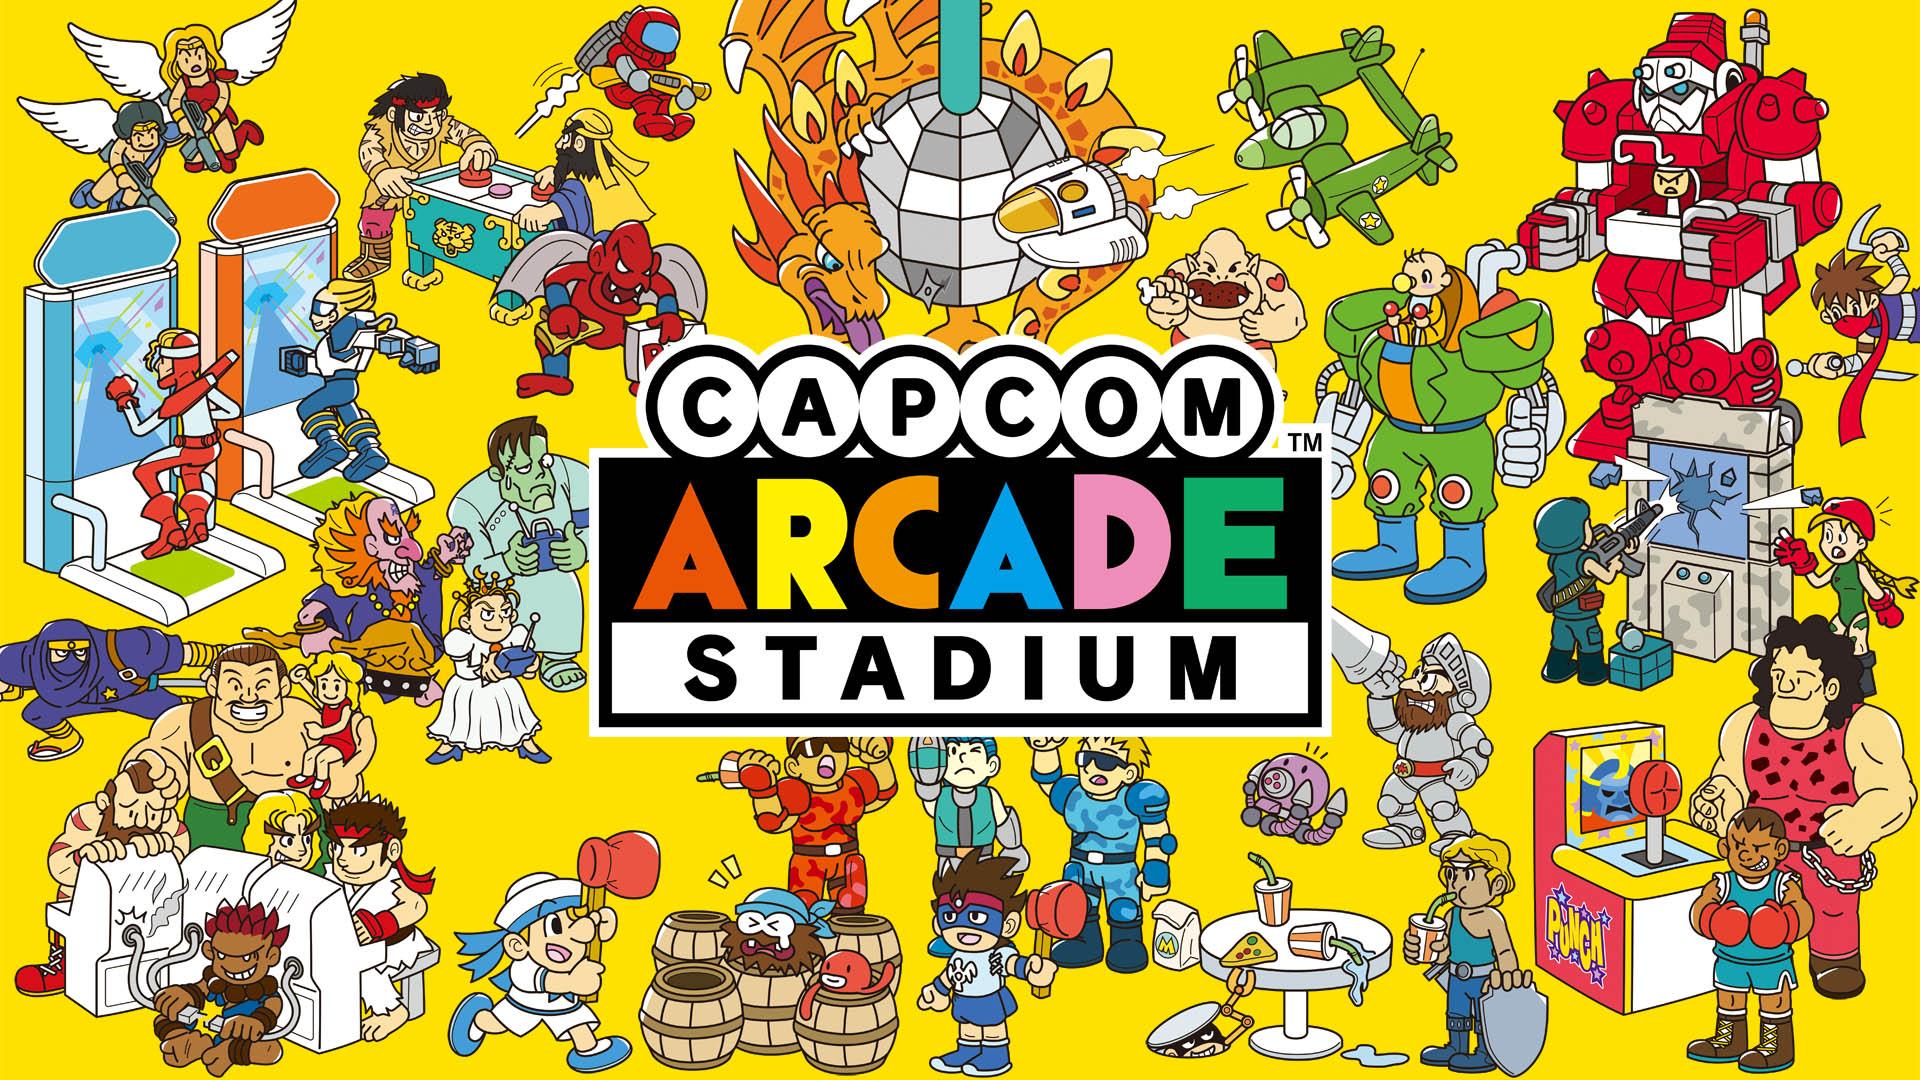 Bộ sưu tập game cổ điển Capcom Arcade 2nd Stadium sẽ ra mắt trên Steam